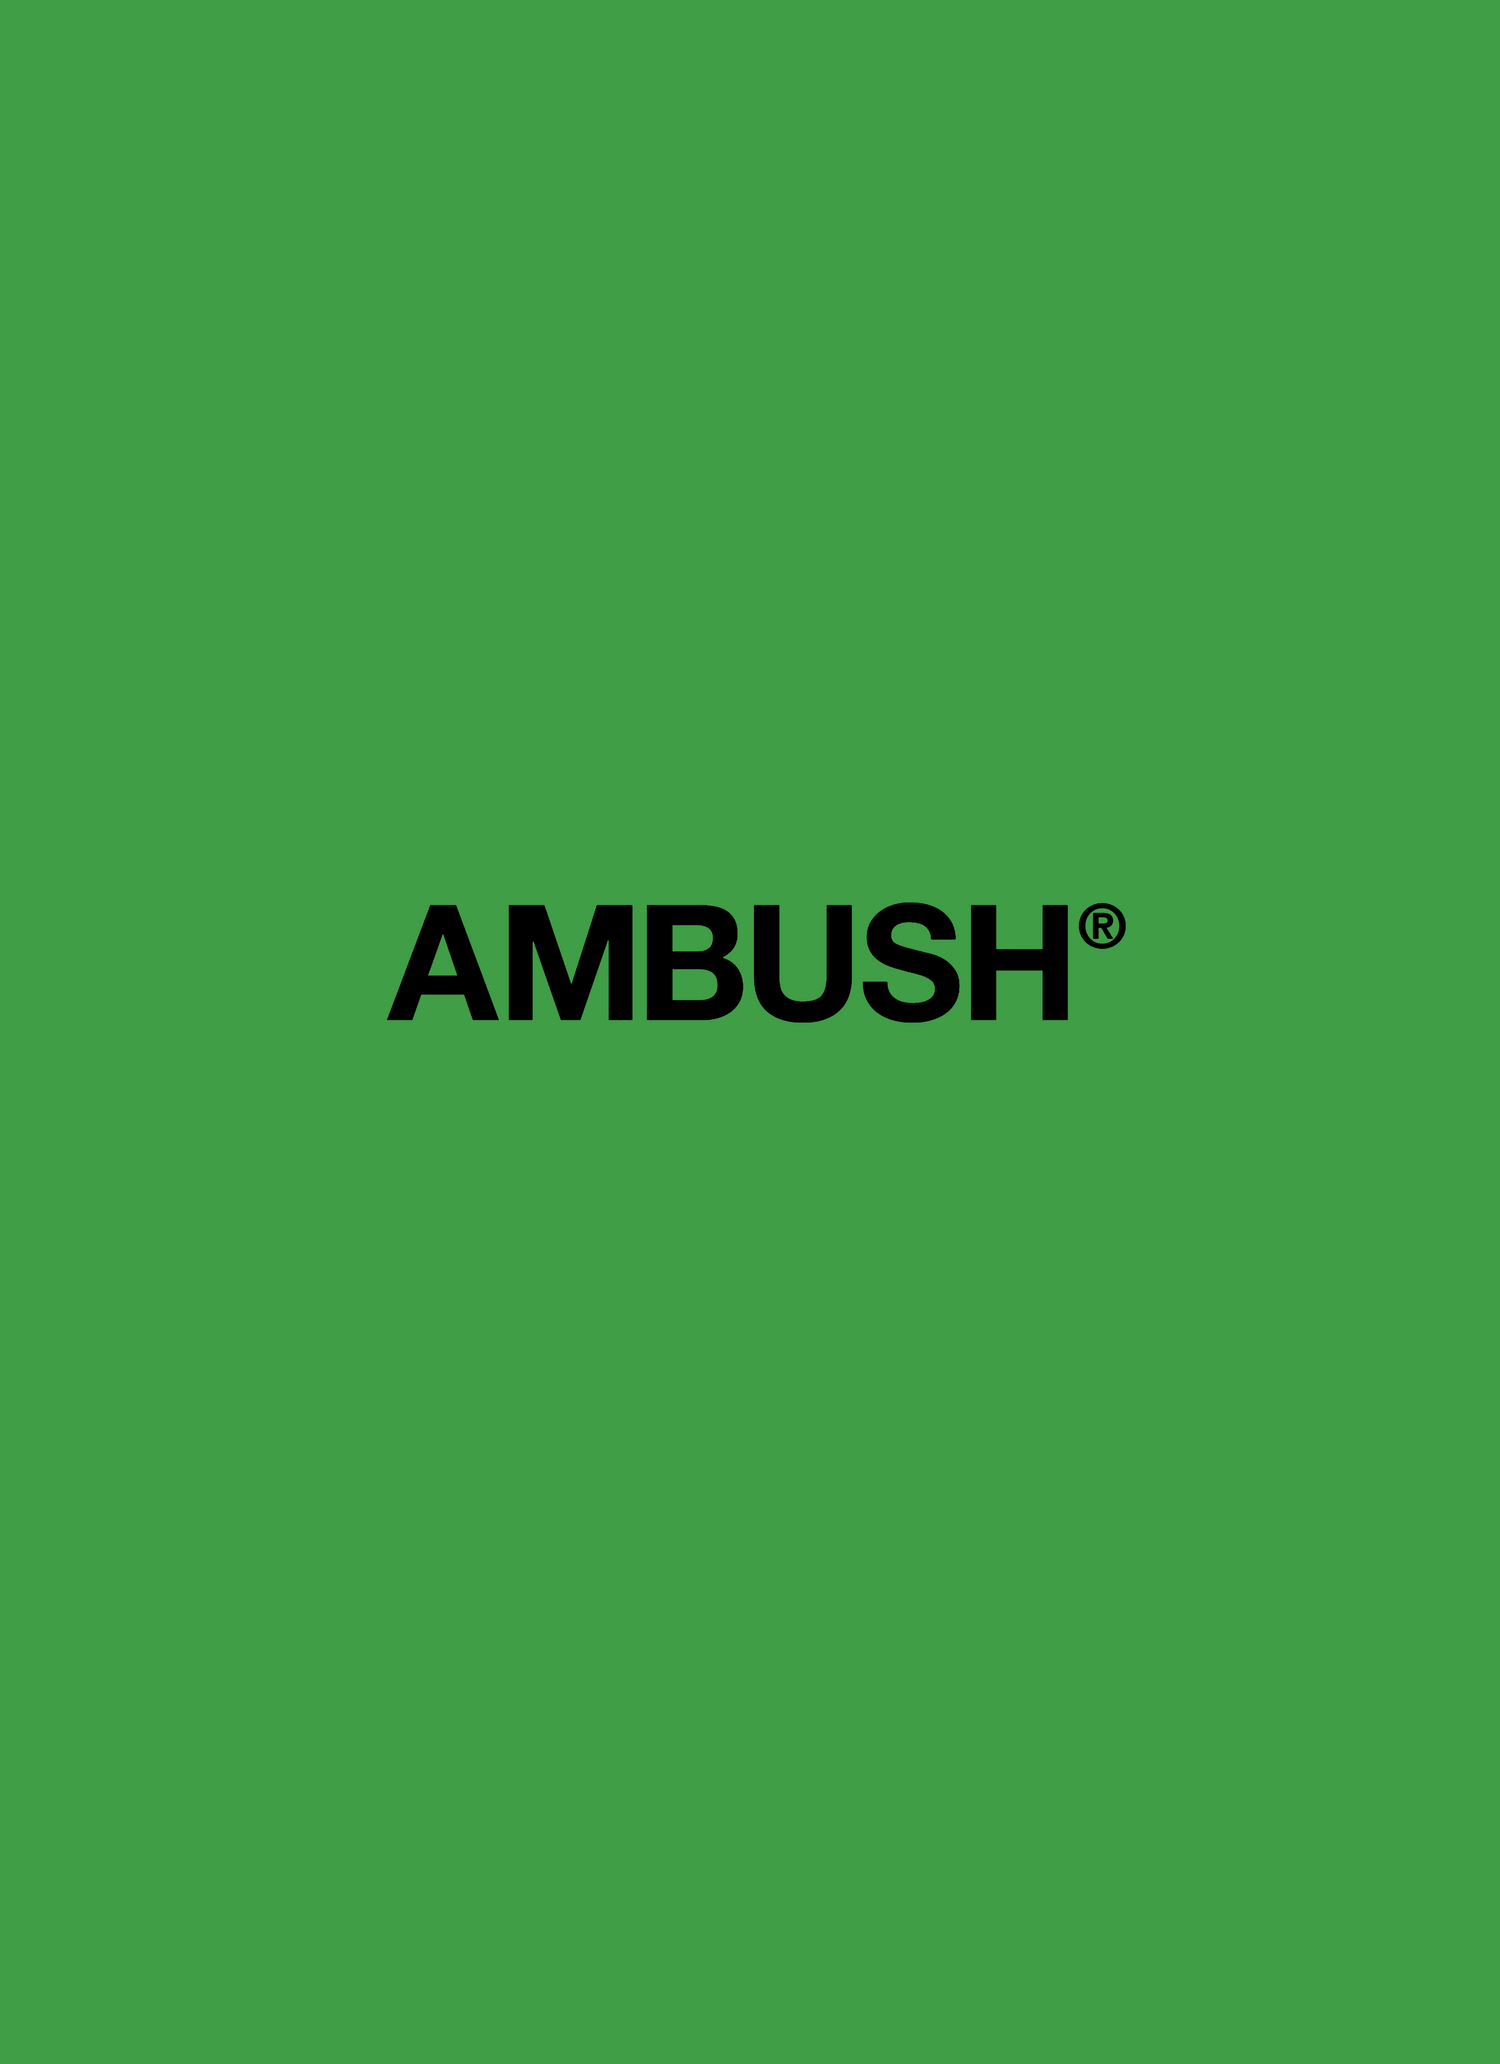 AMBUSH - Funky Insole